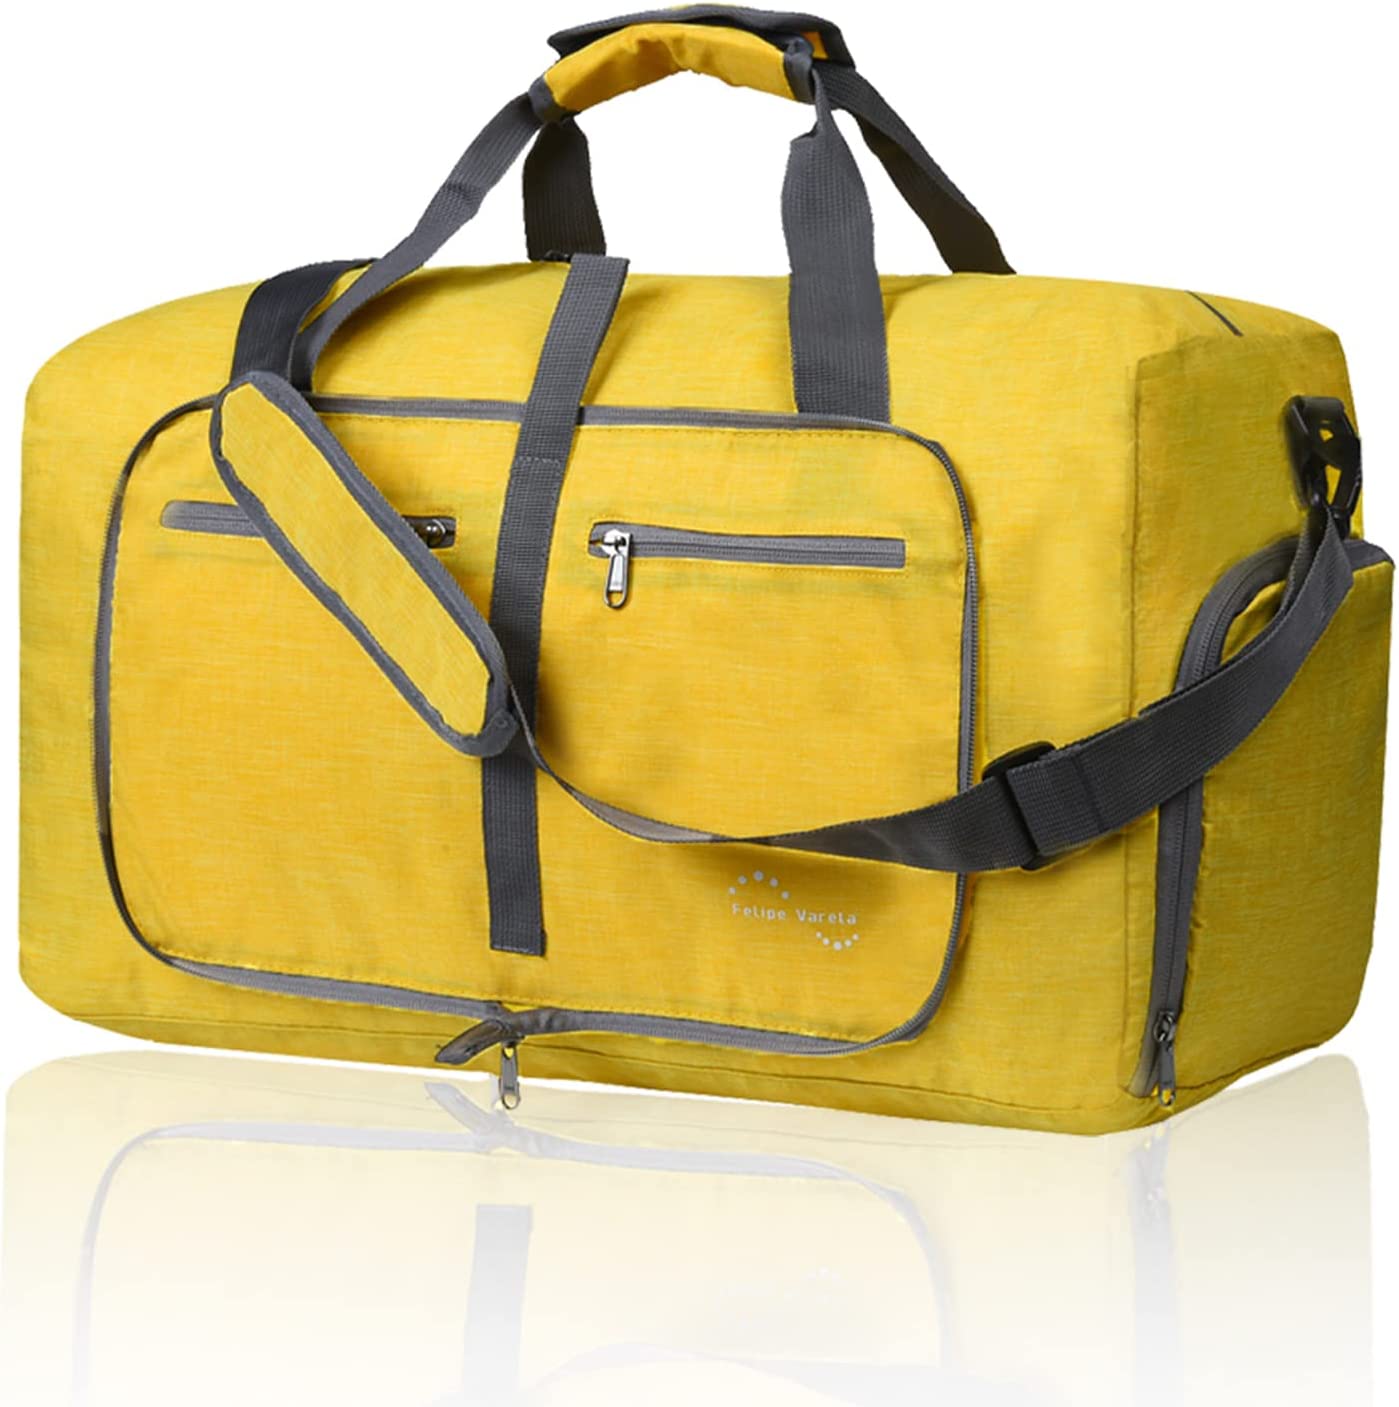 Gonex 60L Duffle Bag with Shoe Compartment